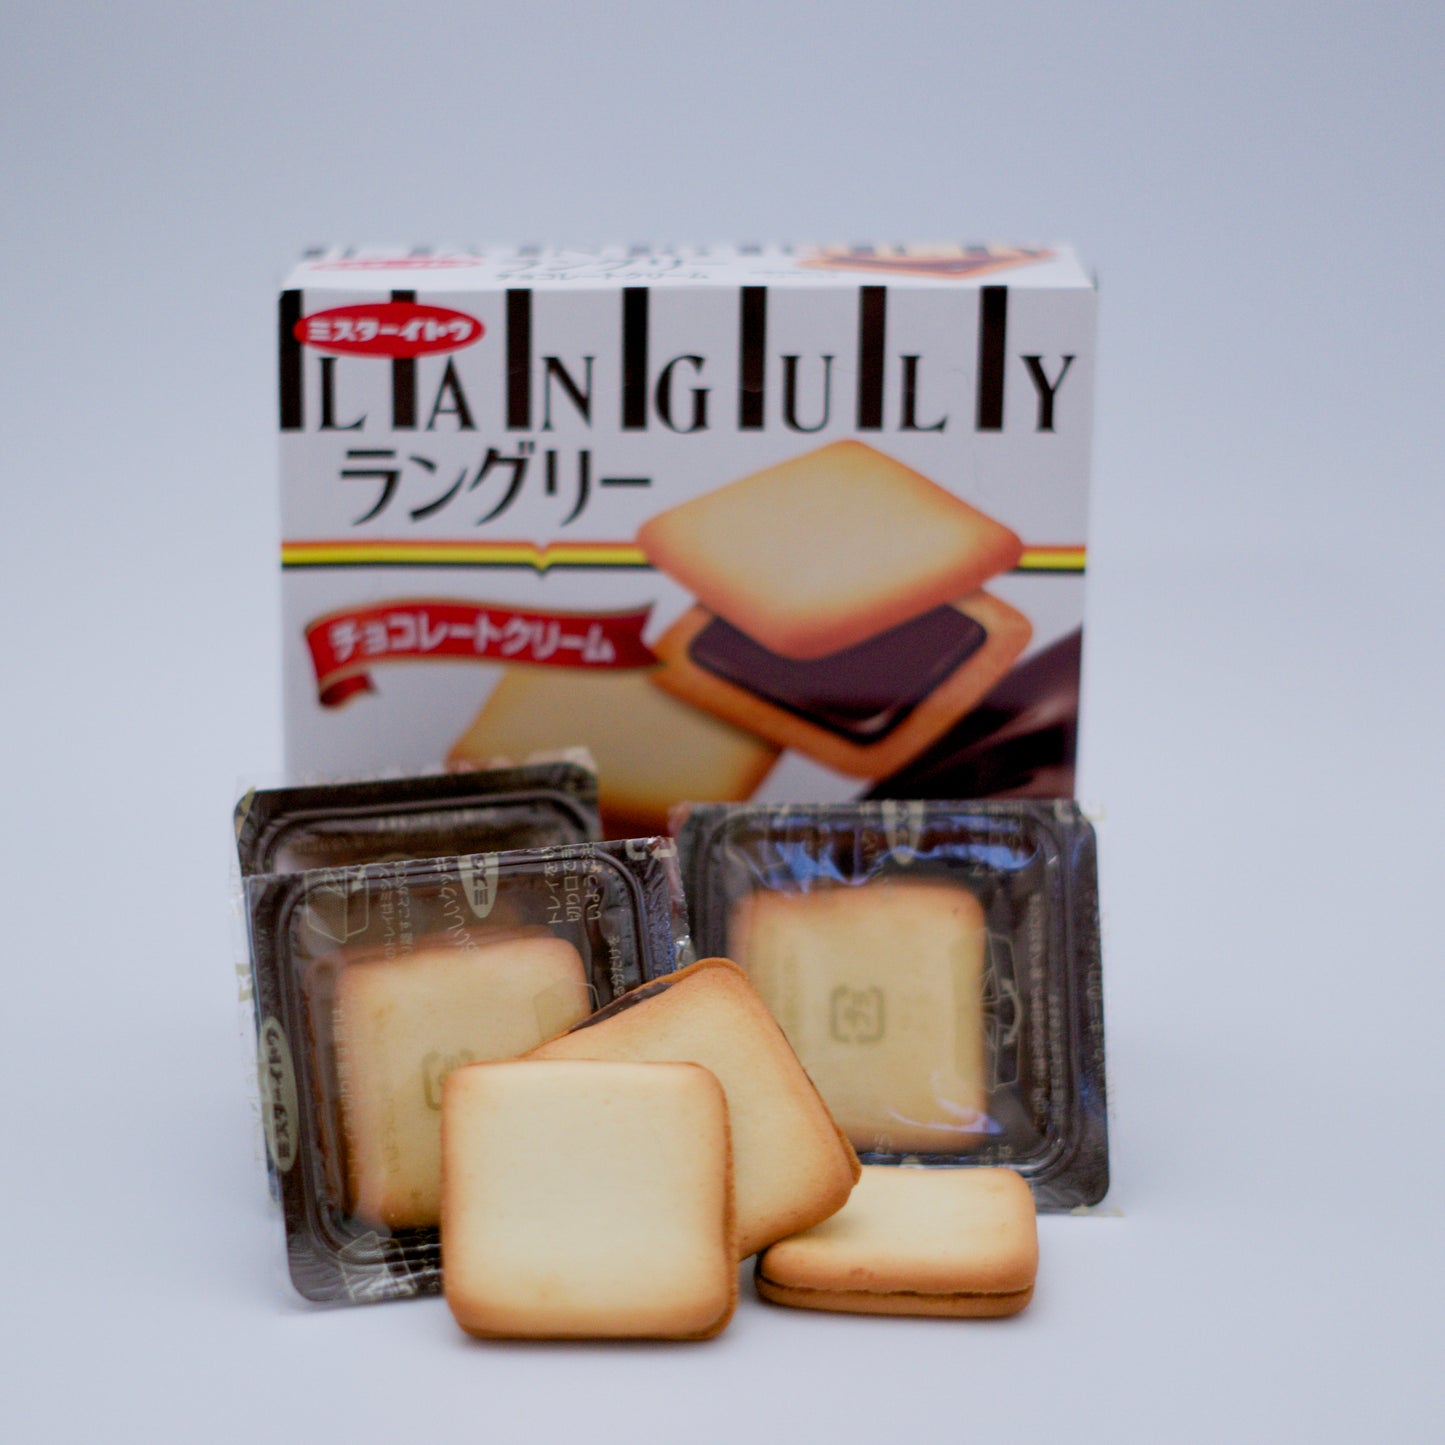 Expired - Ito Seika Languly Chocolate Cream Biscuits